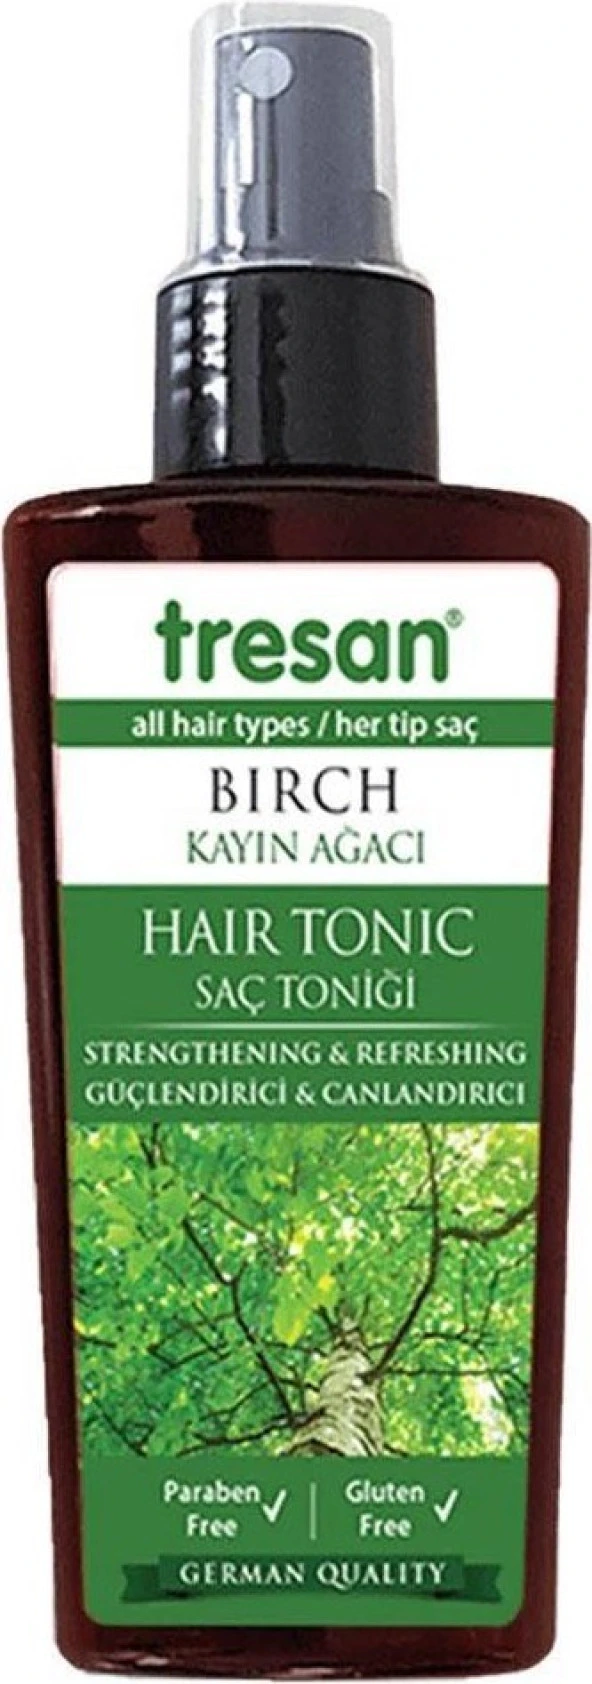 Tresan Kayın Ağacı Güçlendirici Ve Canlandırıcı Saç Toniği 125 ml